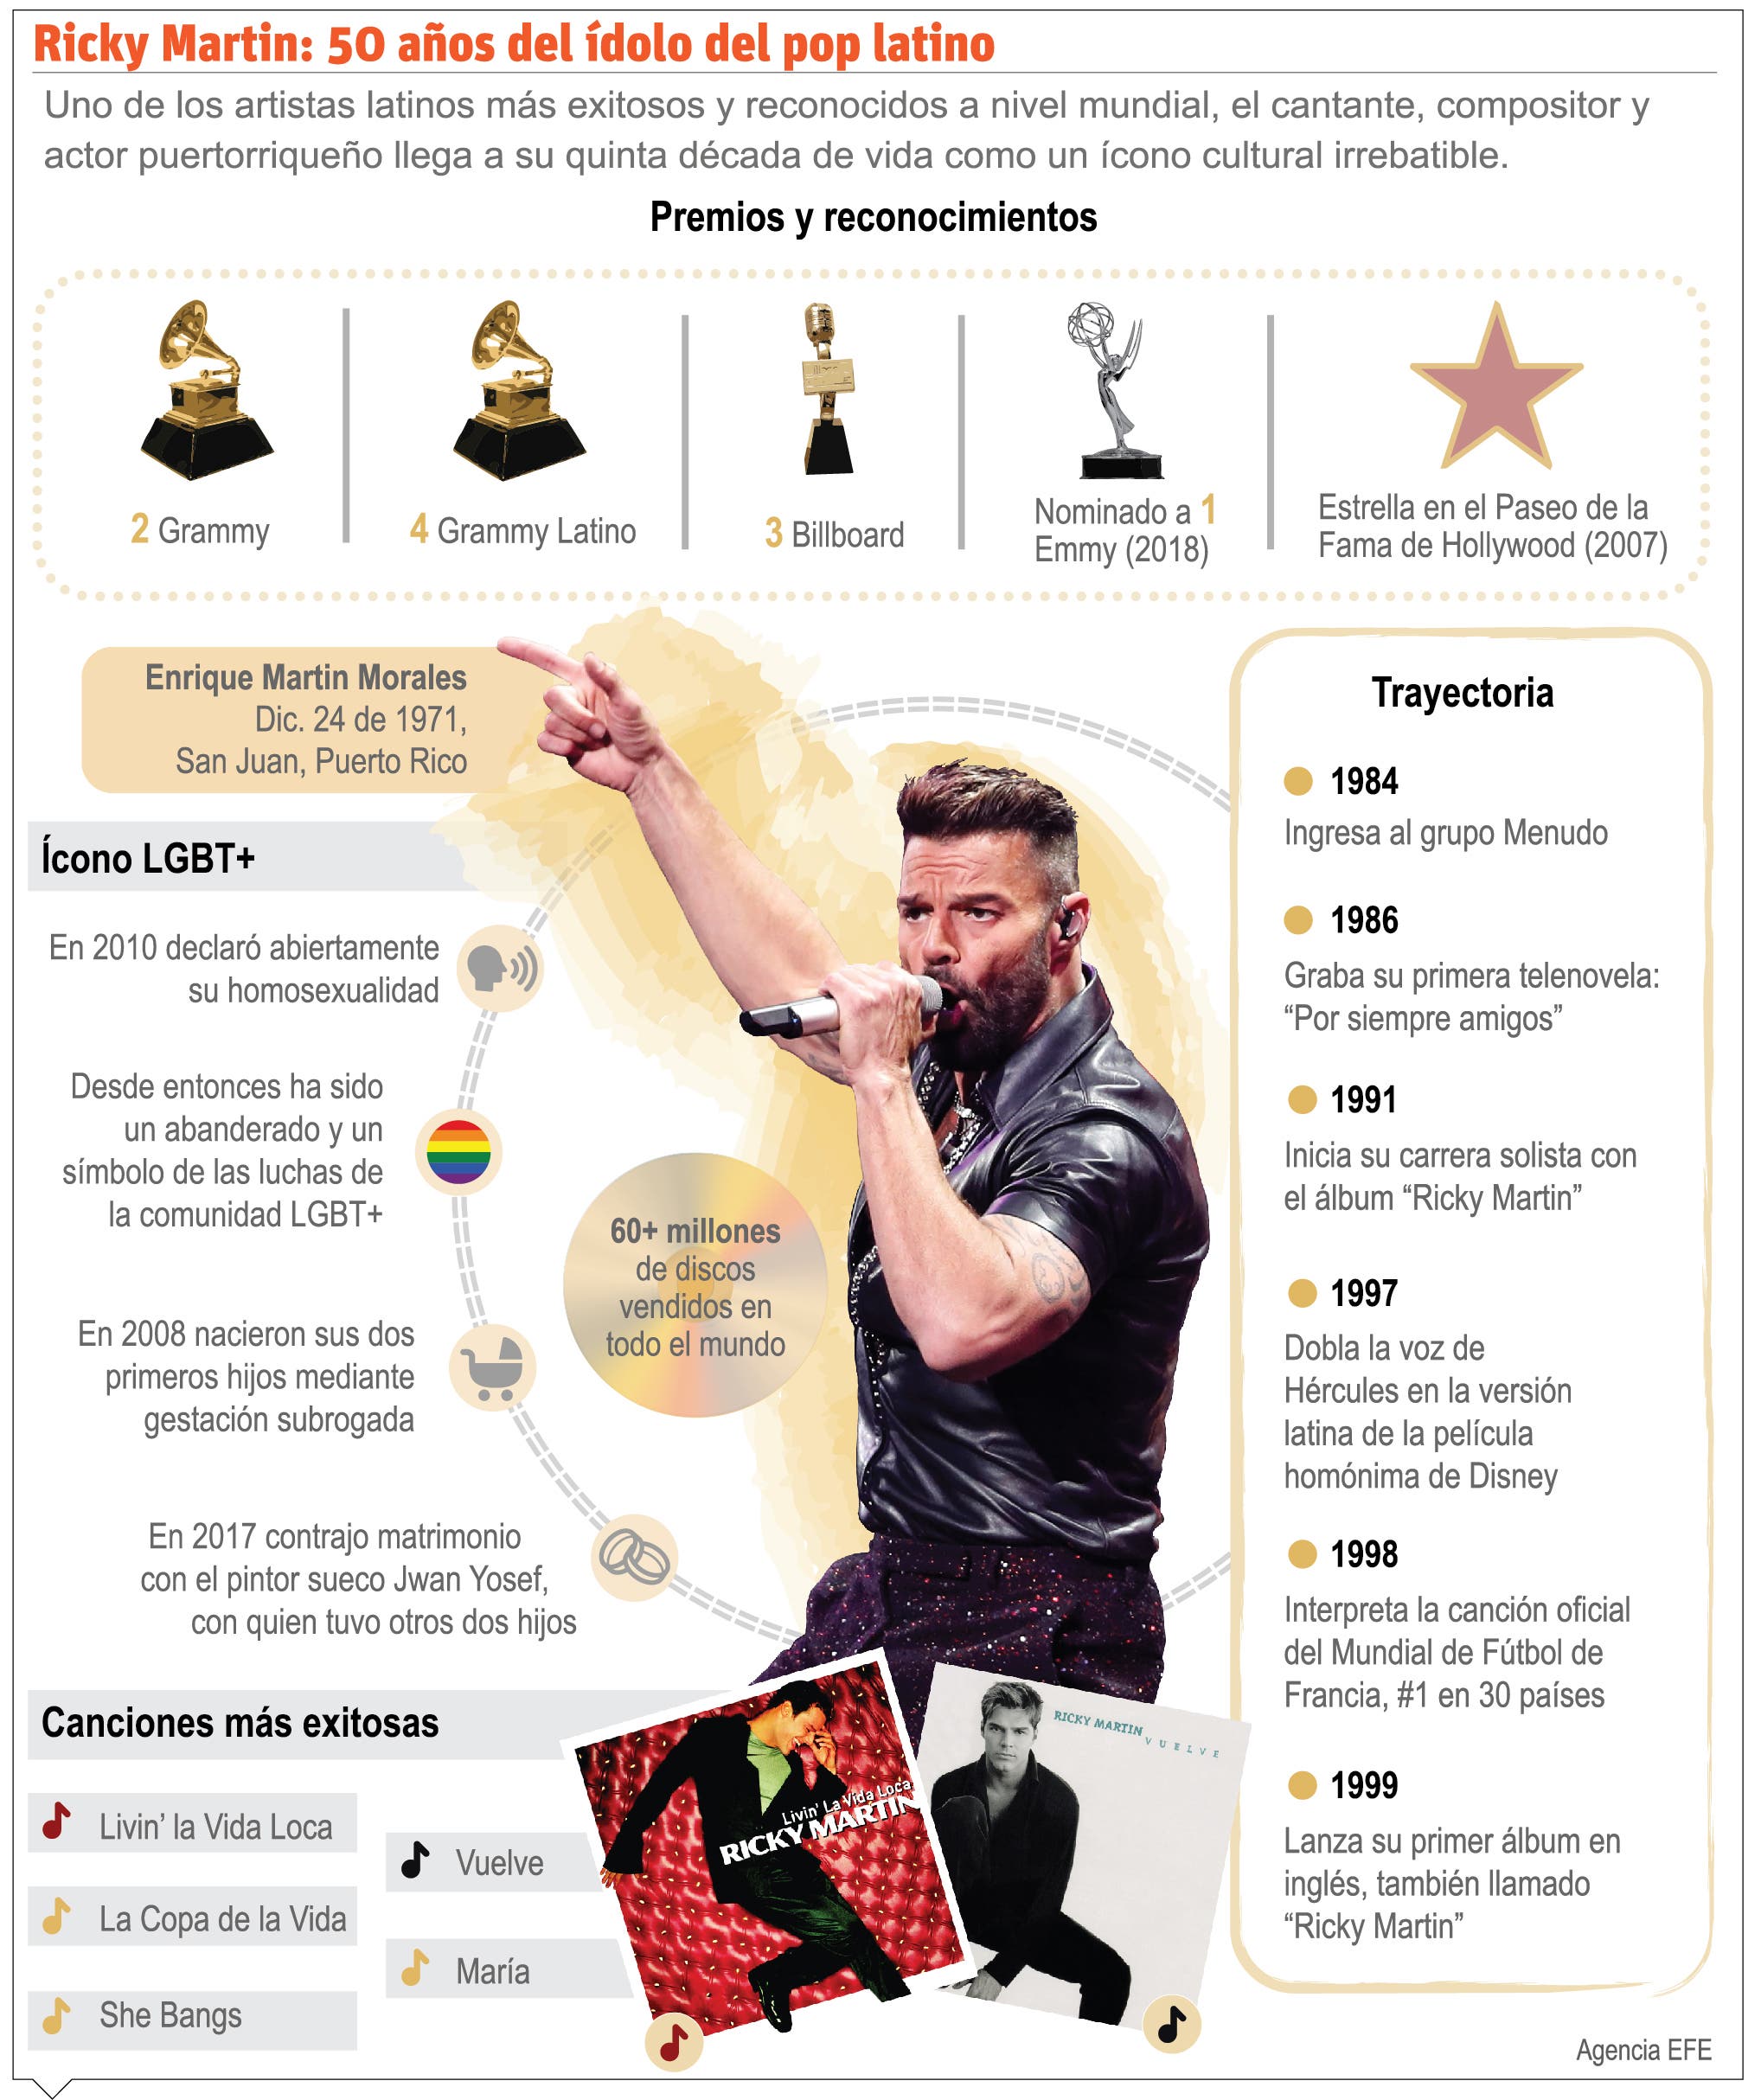 Ricky Martin llega a 50 años hoy como consagrado artista